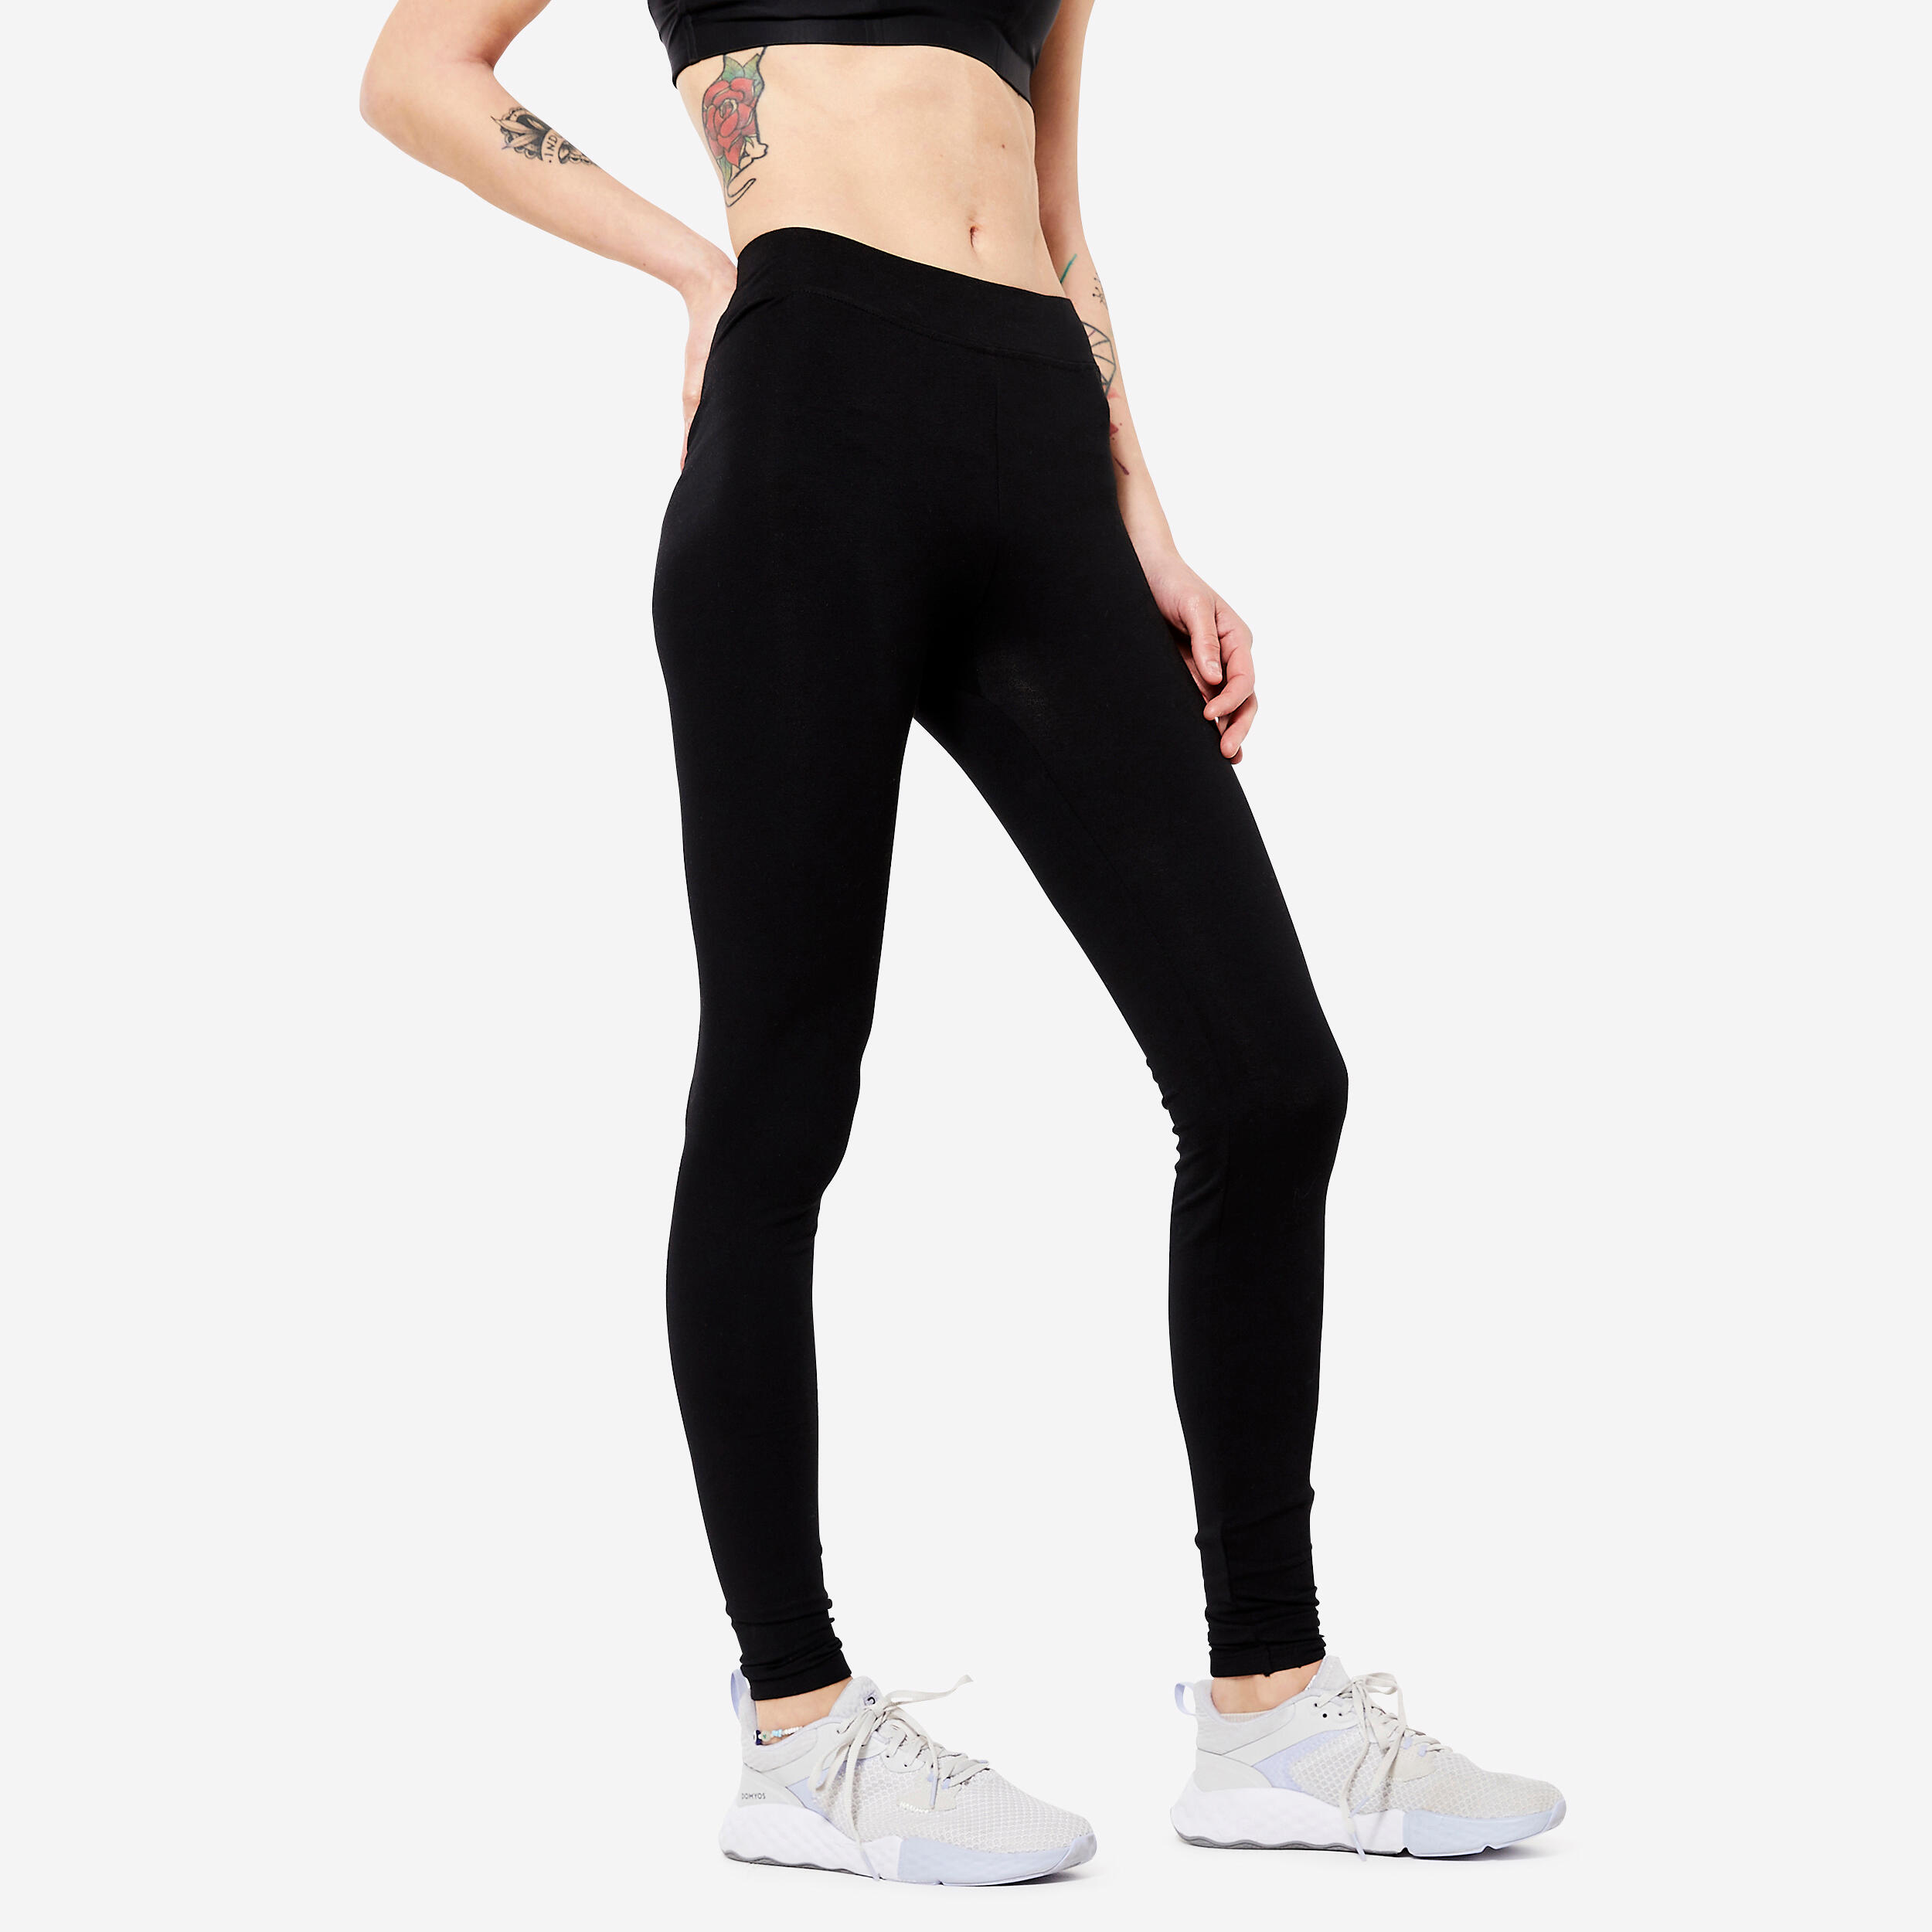 Women’s Fitness Leggings - Fit+ 500